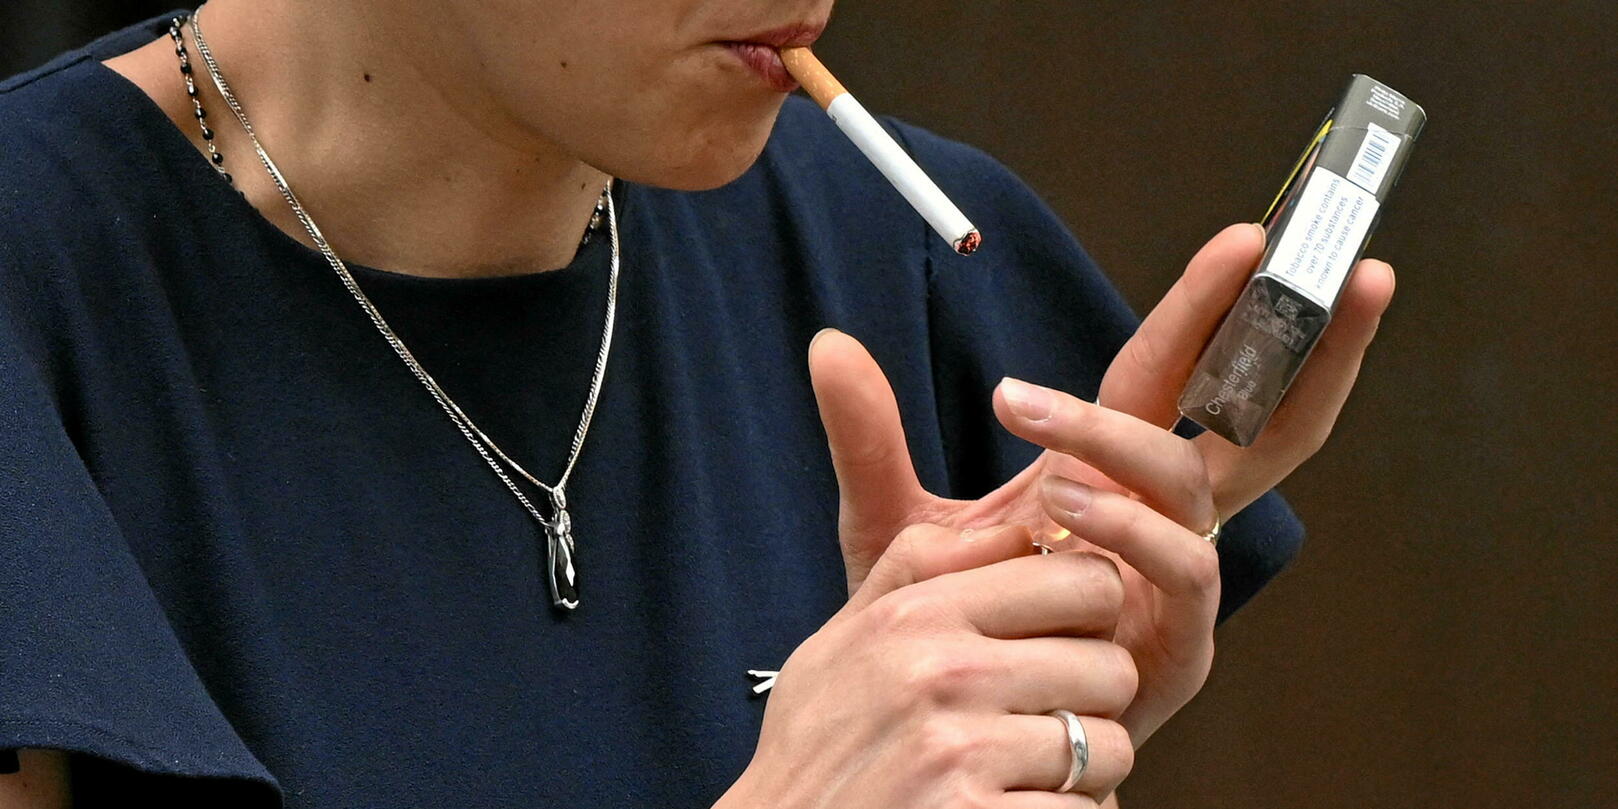 Le tabac - Est-ce un nouveau risque de cancer de la prostate?